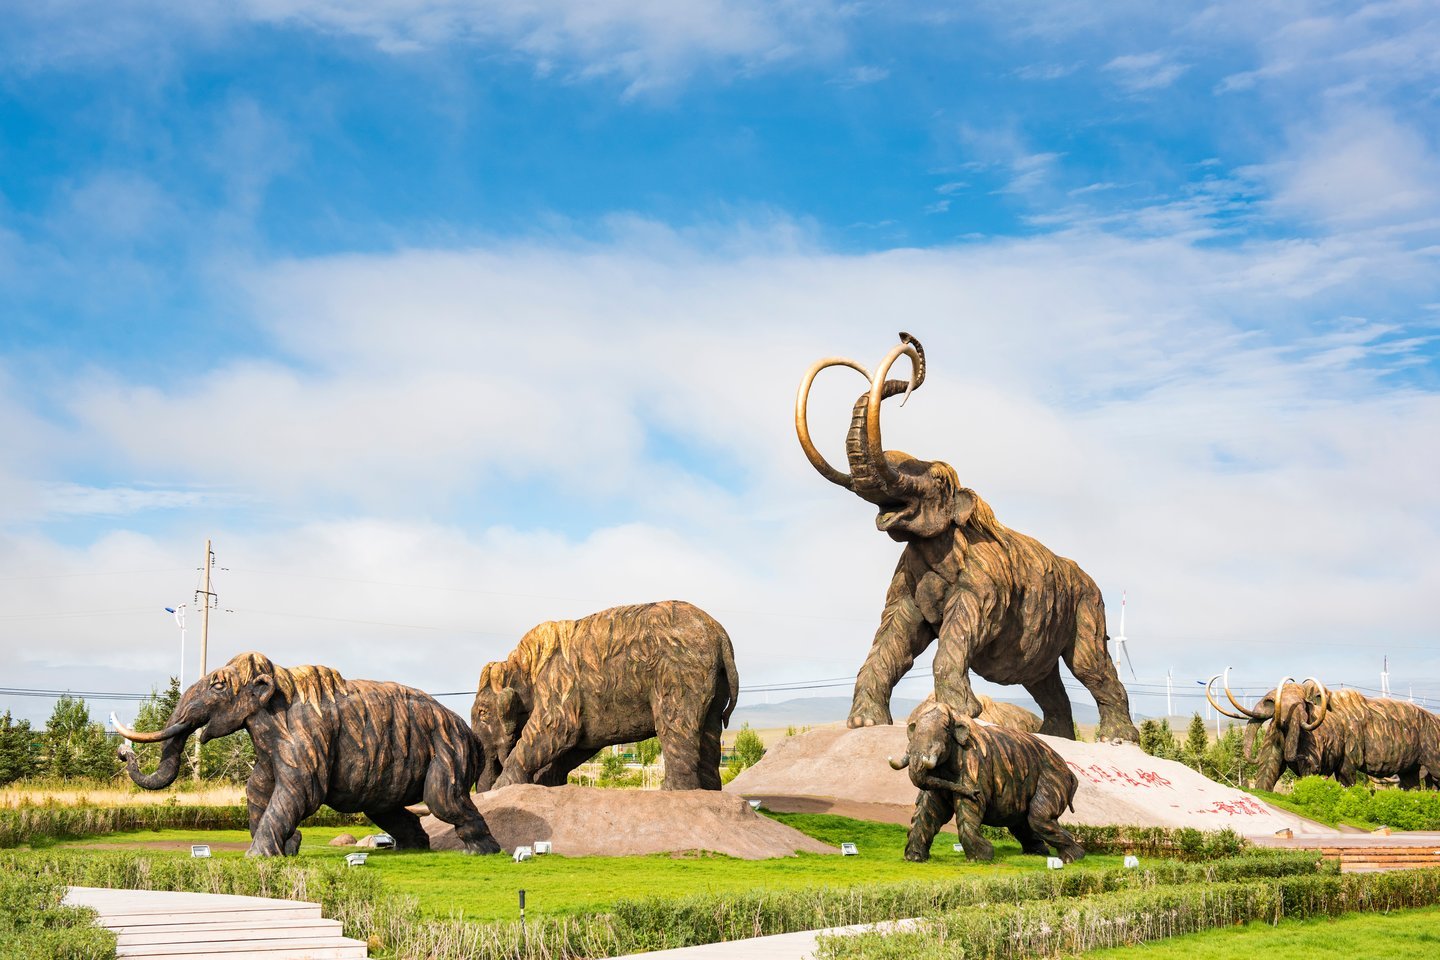  Mamutų parkas Mongolijoje. Anot kai kurių mokslininkų, jei ne šiuolaikinis žmogus, megafauna galbūt gyvuotų ir šiandien.<br> 123rf nuotr.